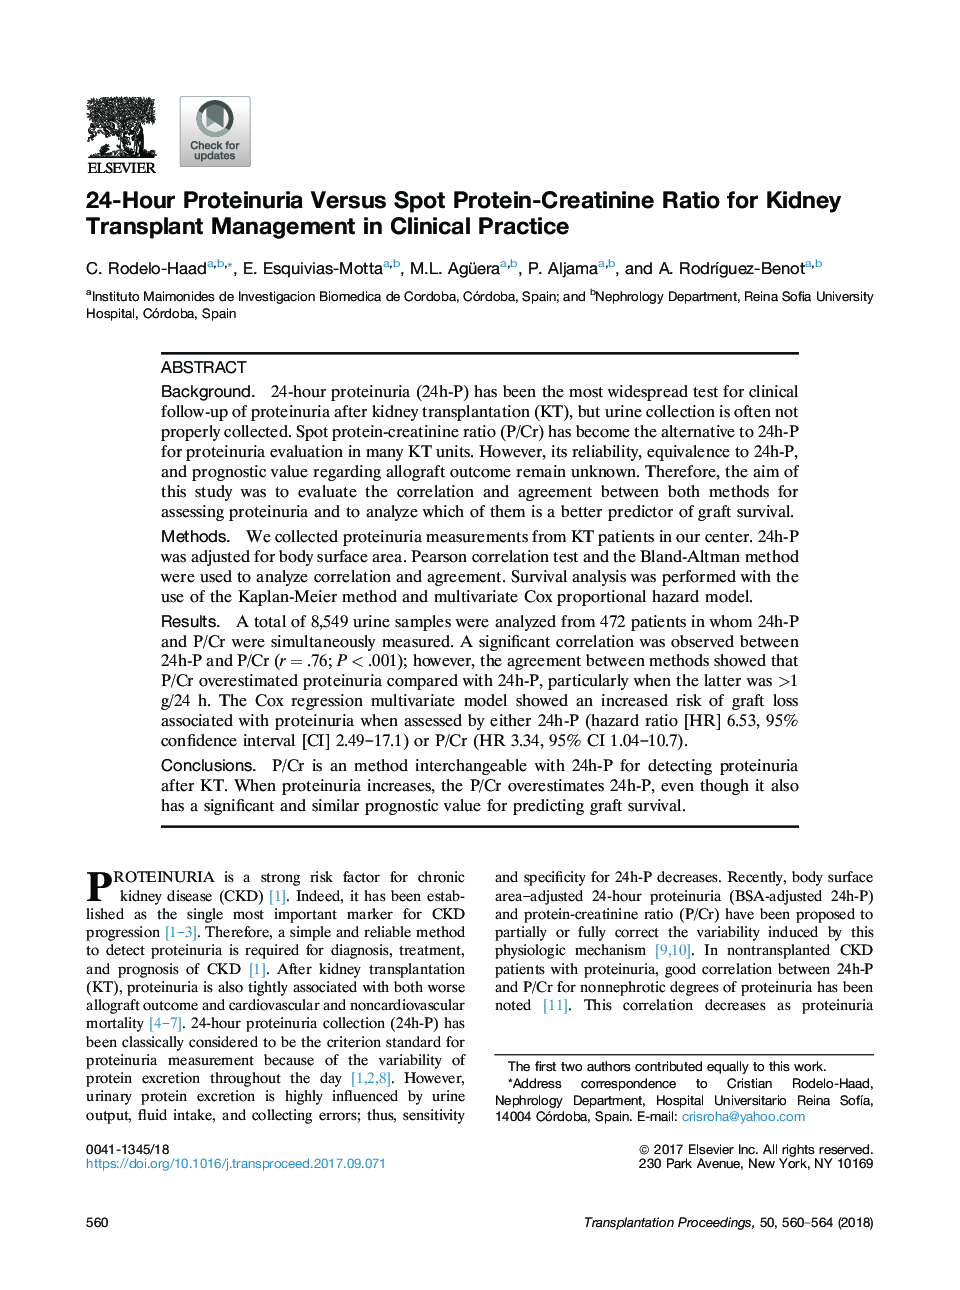 نسبت پروتئین و پروتئین 24 ساعته به پروتئین-کراتینین نسبت به پیوند کلیه در عمل بالینی 